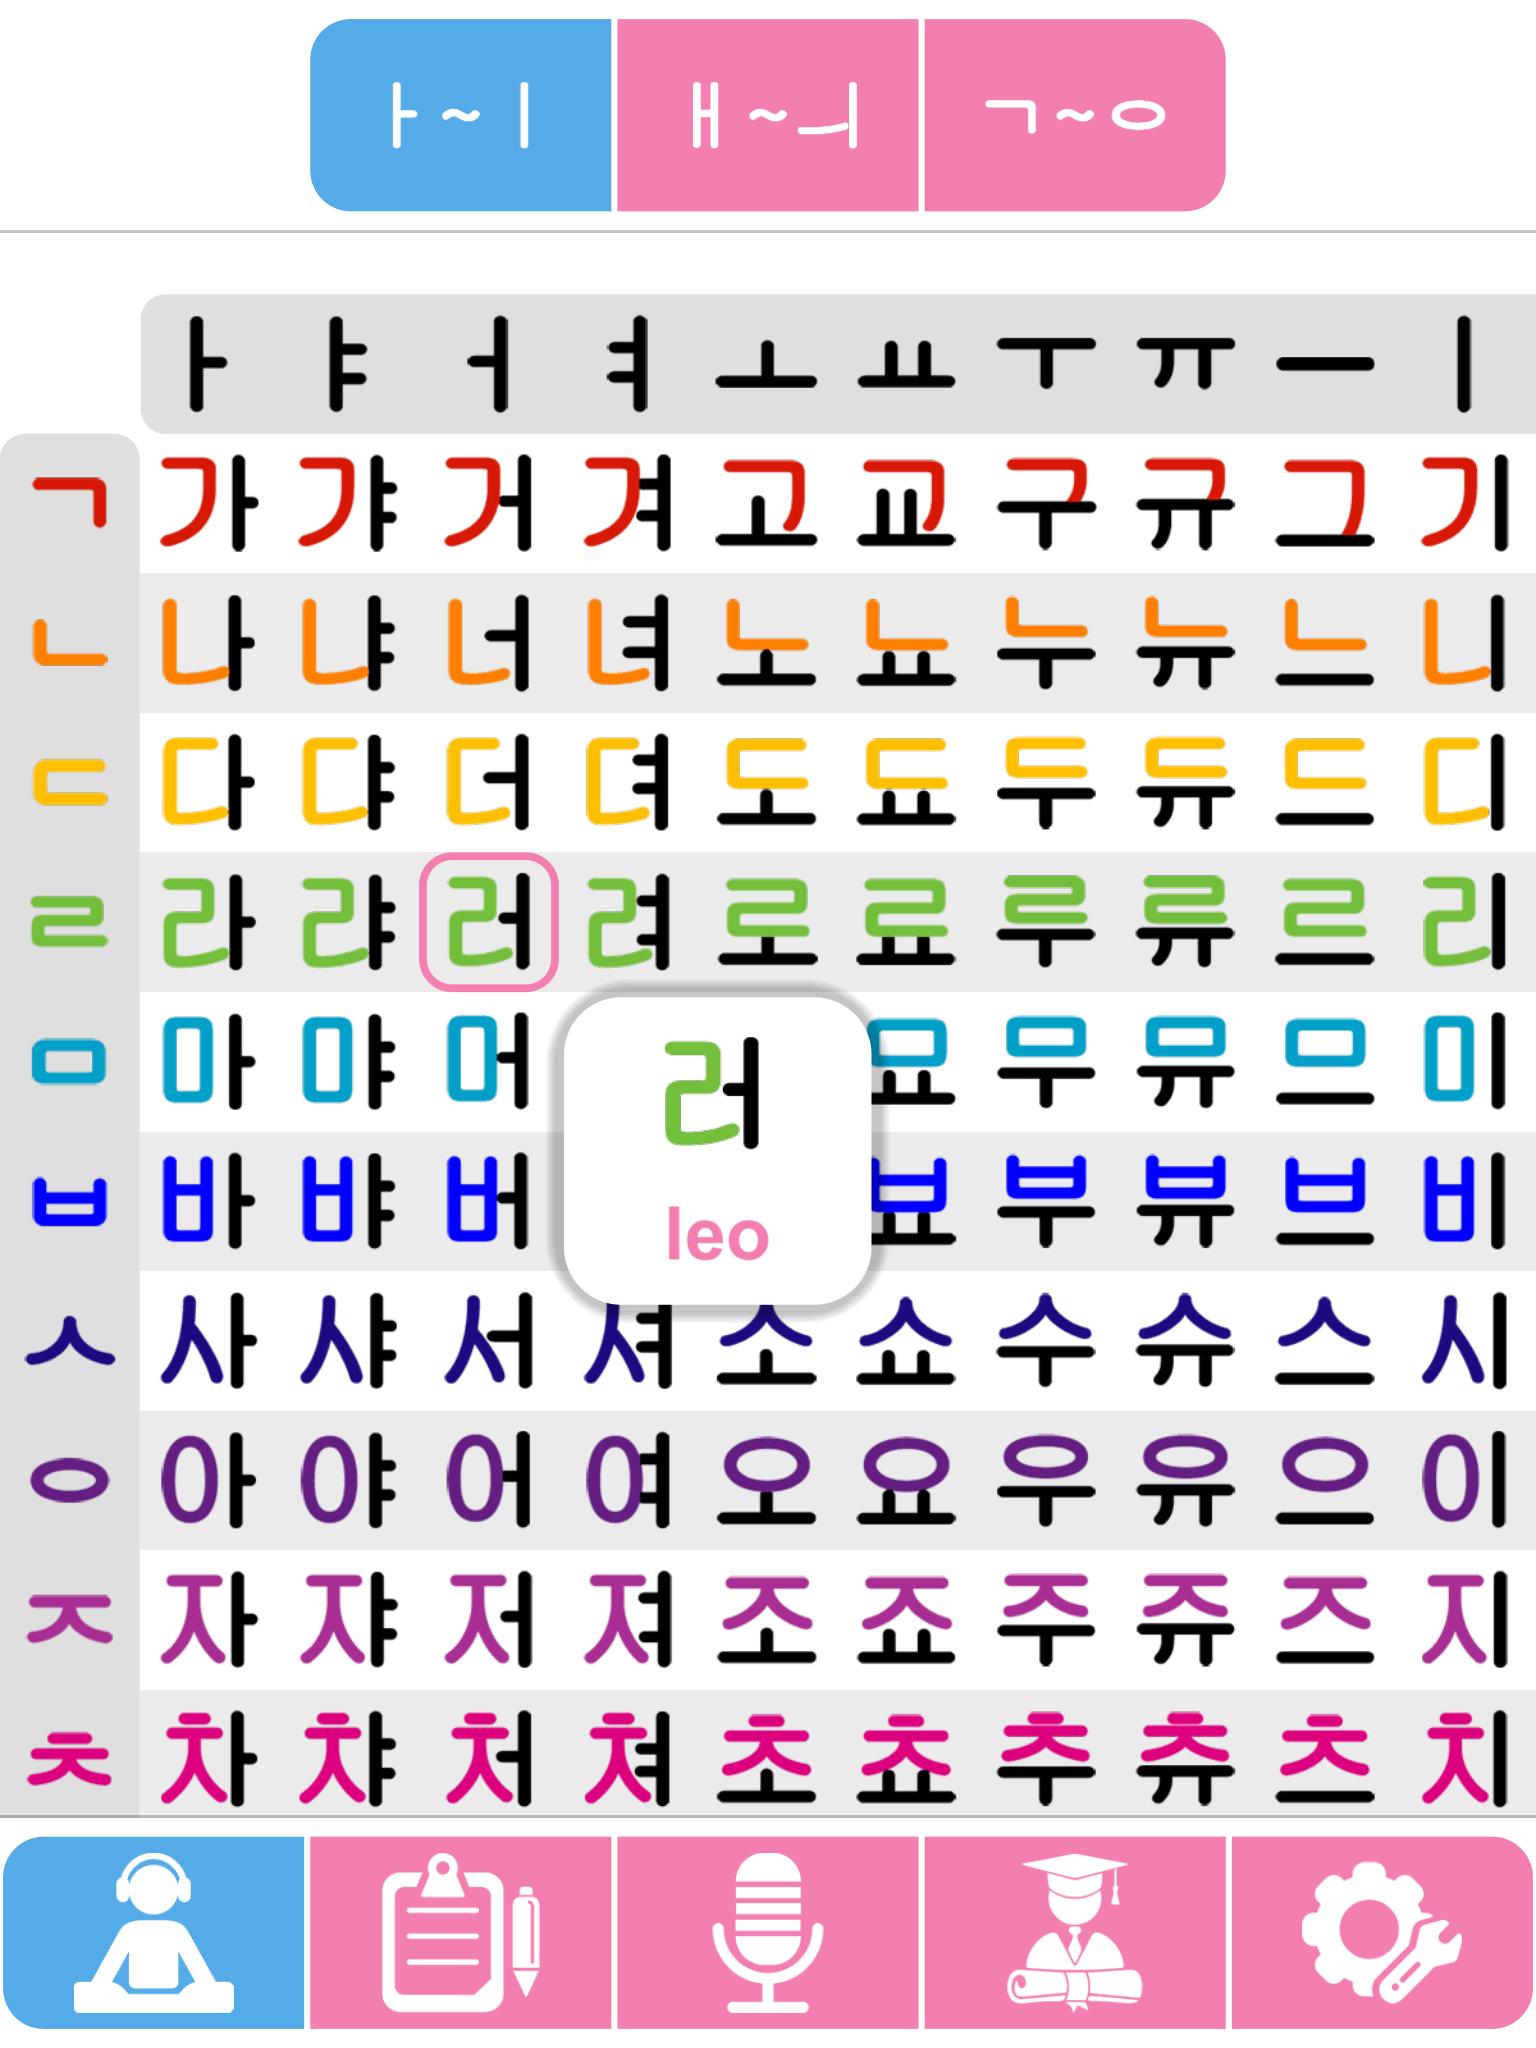 Learn Korean Alphabet Korean Alphabet Learn Hangul Speak Phrases Easily Fast App Apkpure